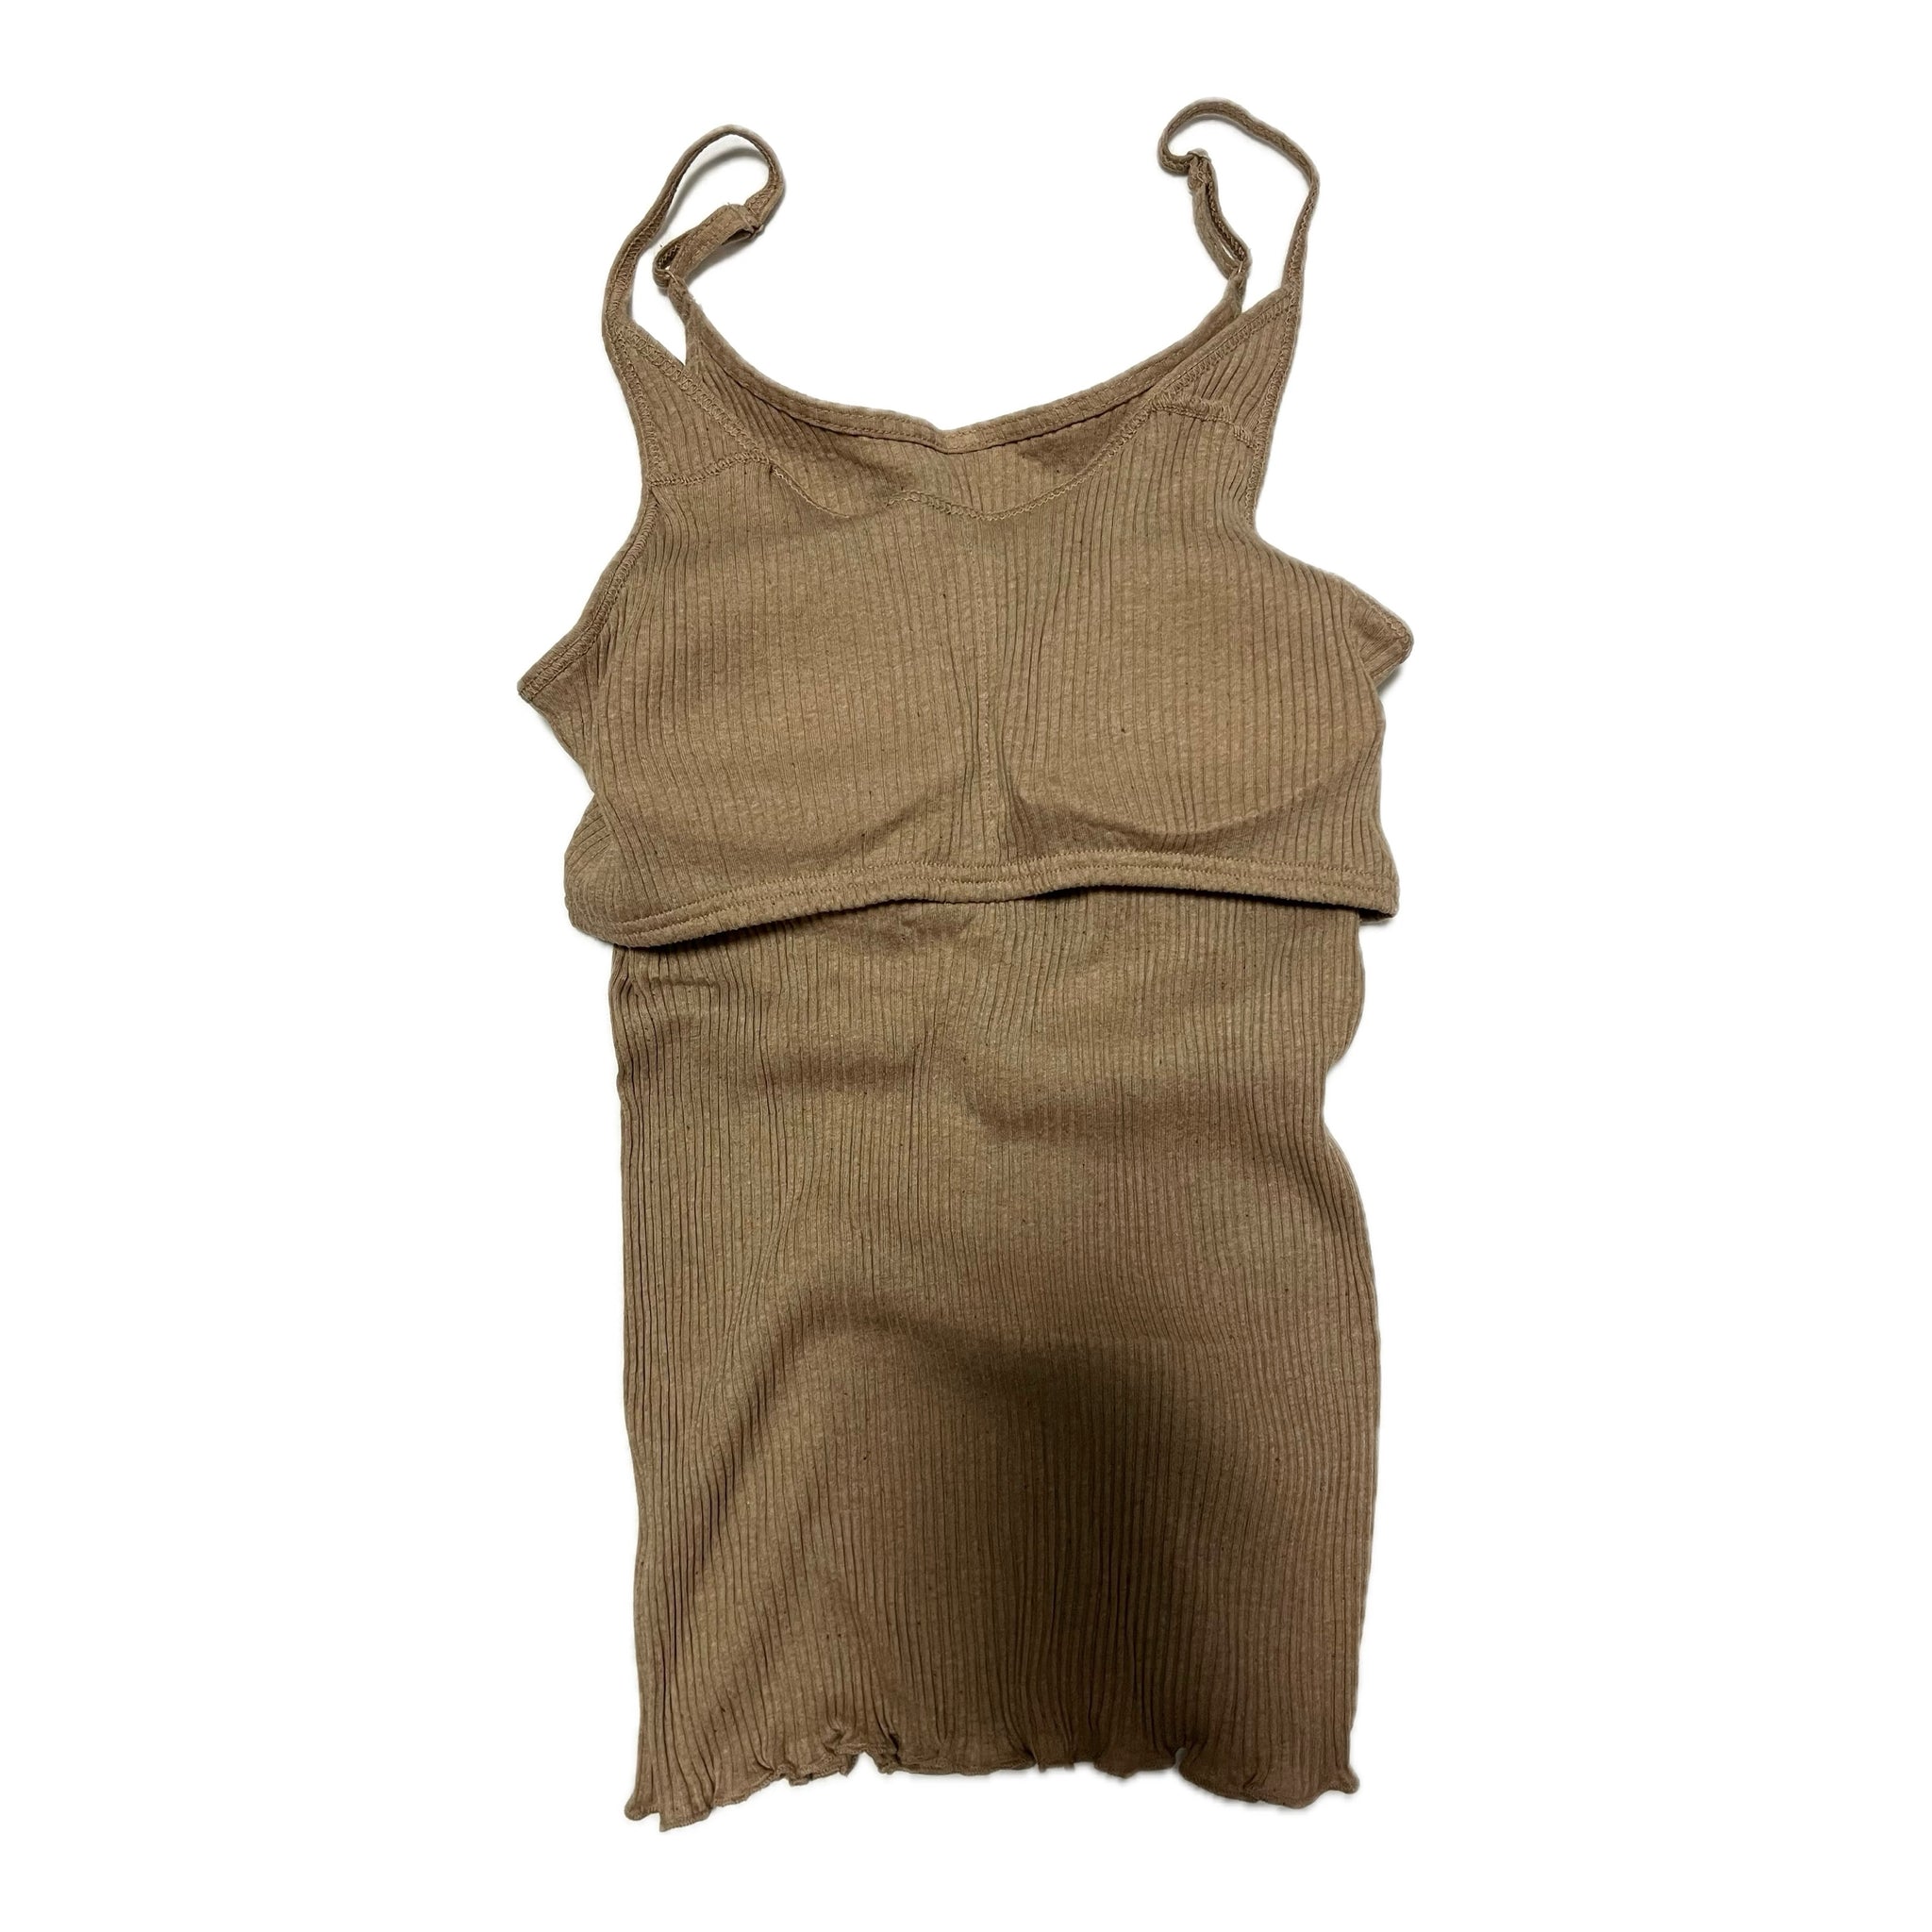 オーガニックコットン under wearセット(brown cotton)| Lochie |